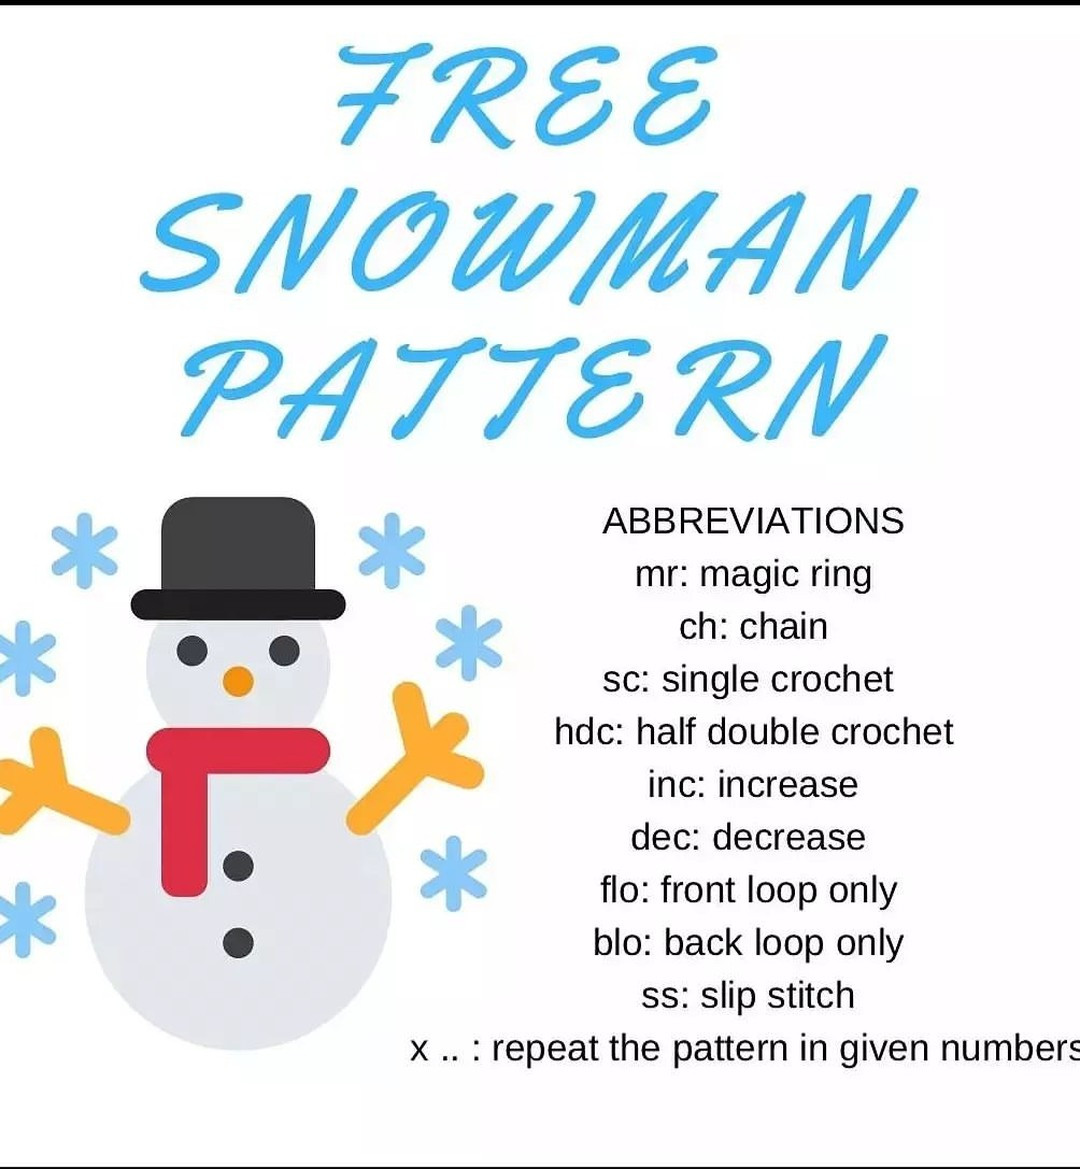 Snowman crochet pattern wearing a blue hat